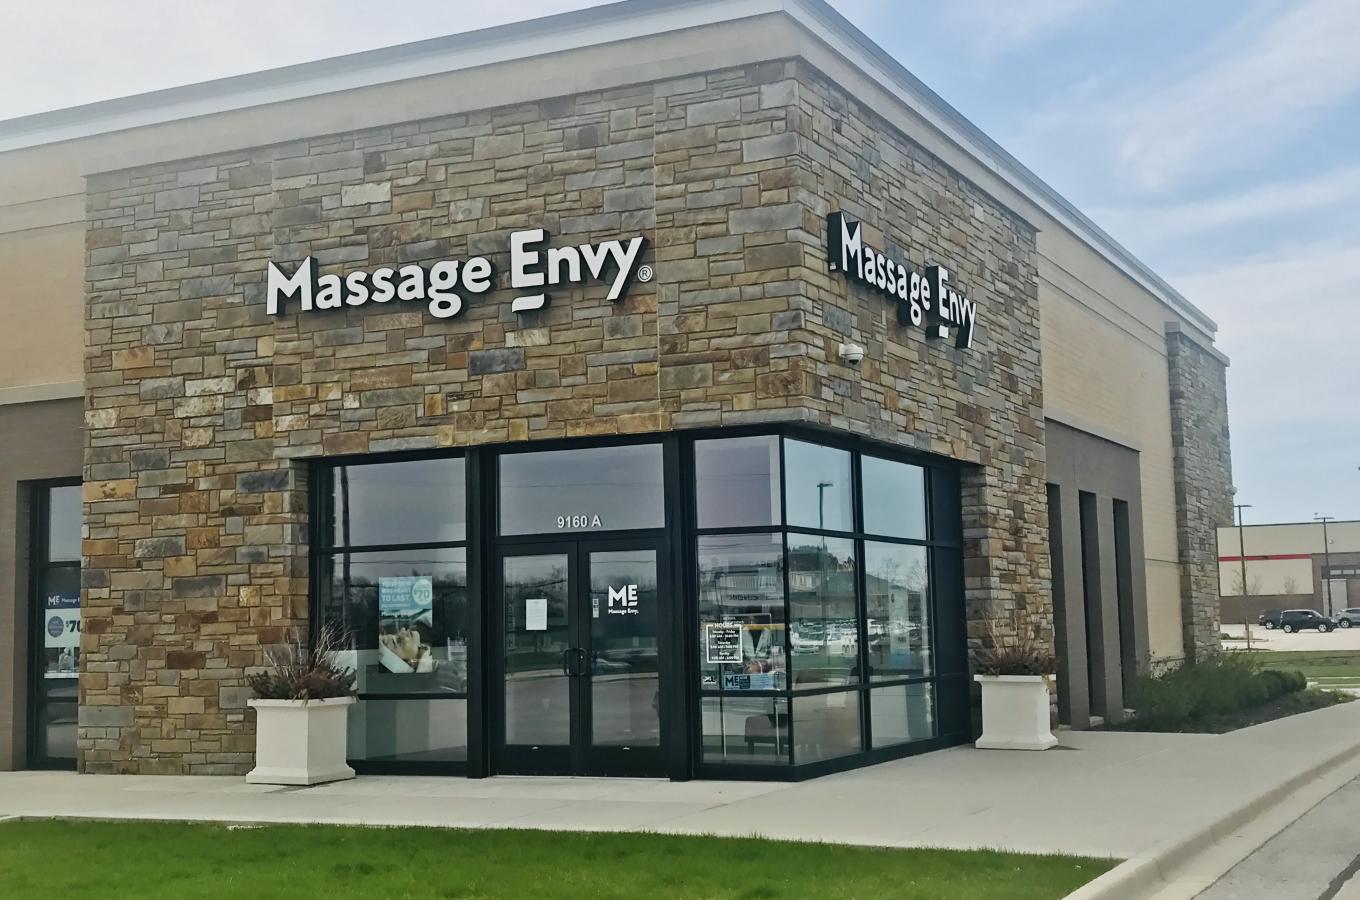 Massage Envy Storefront